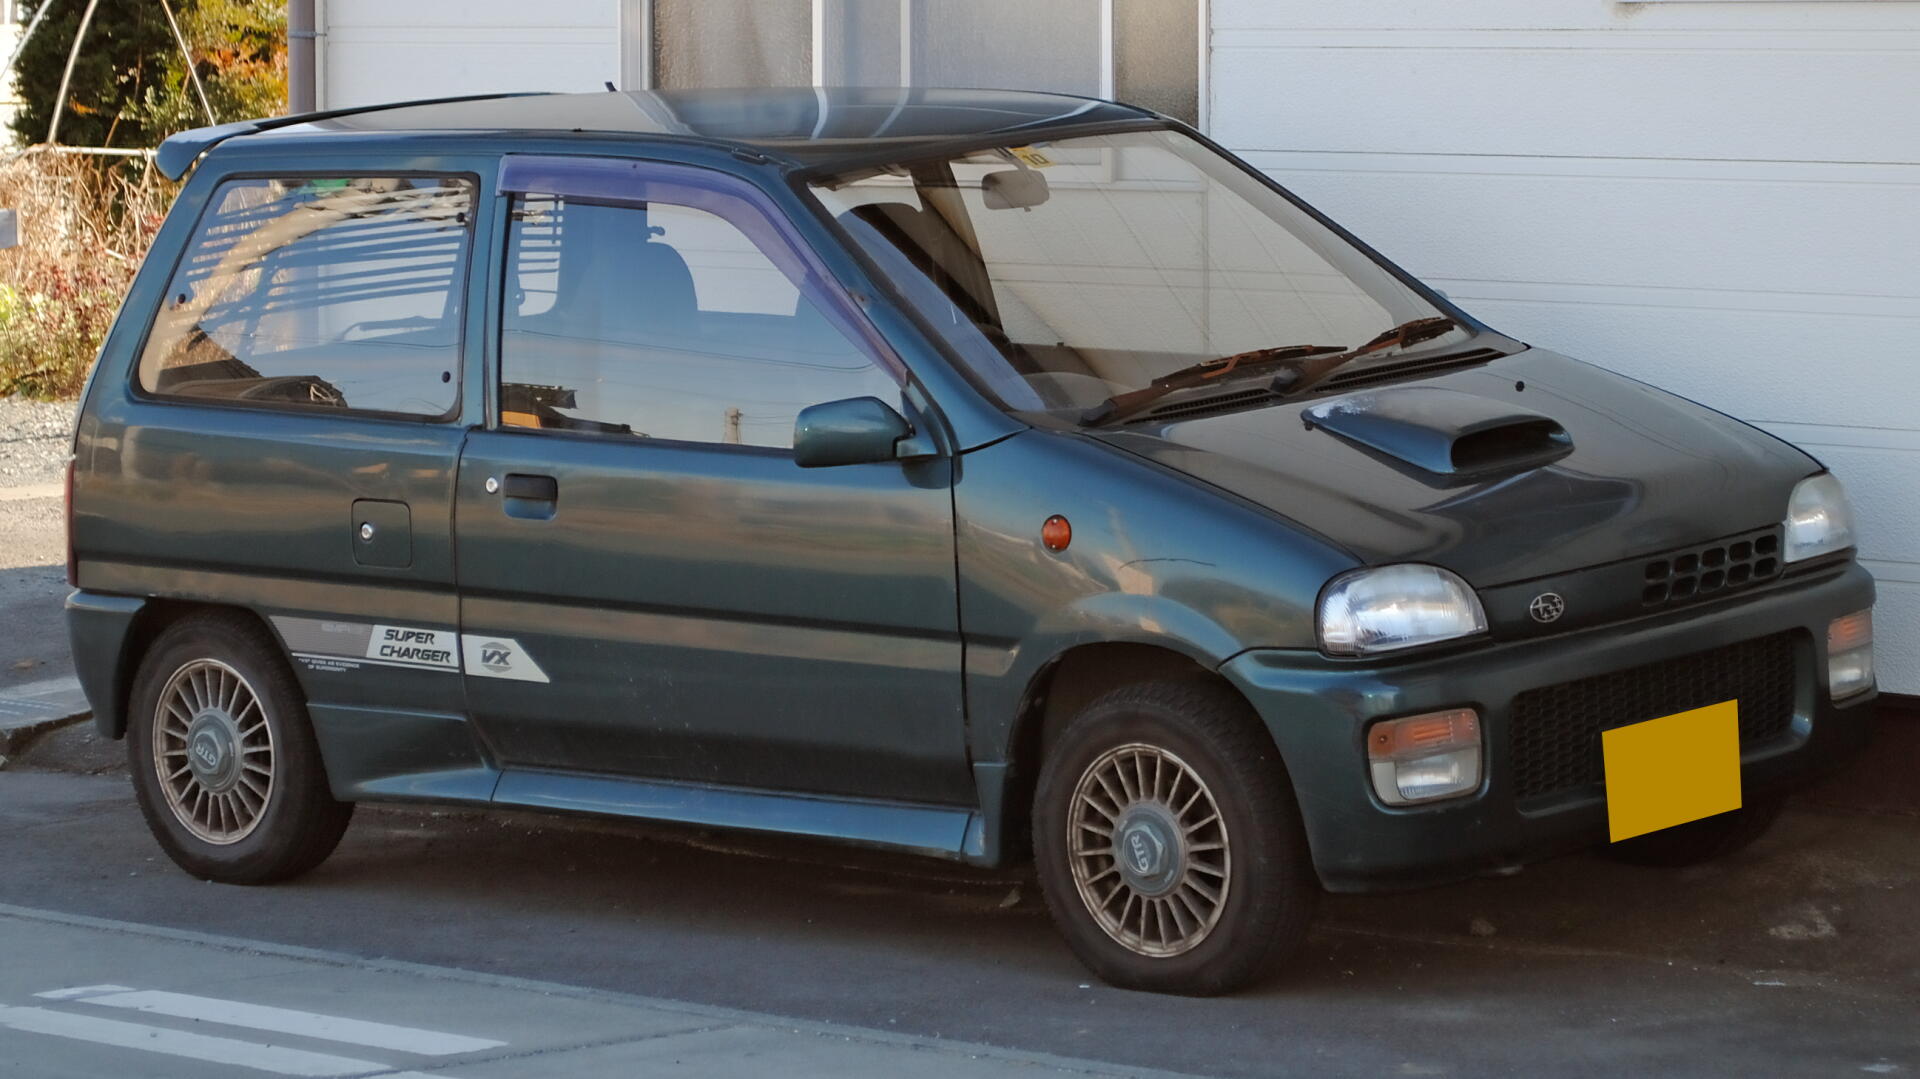 Subaru Rex